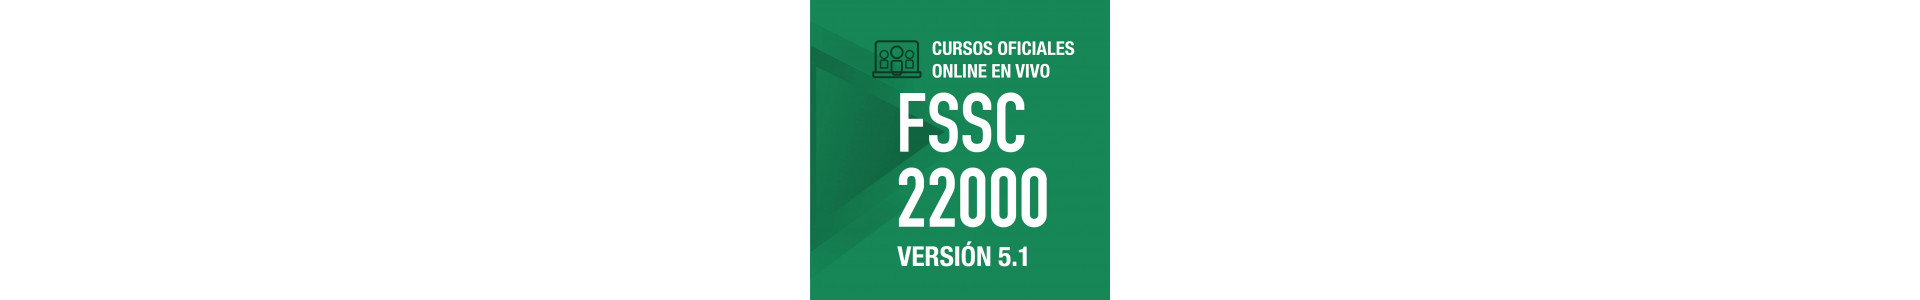 Cursos Oficial online | FSSC 22000